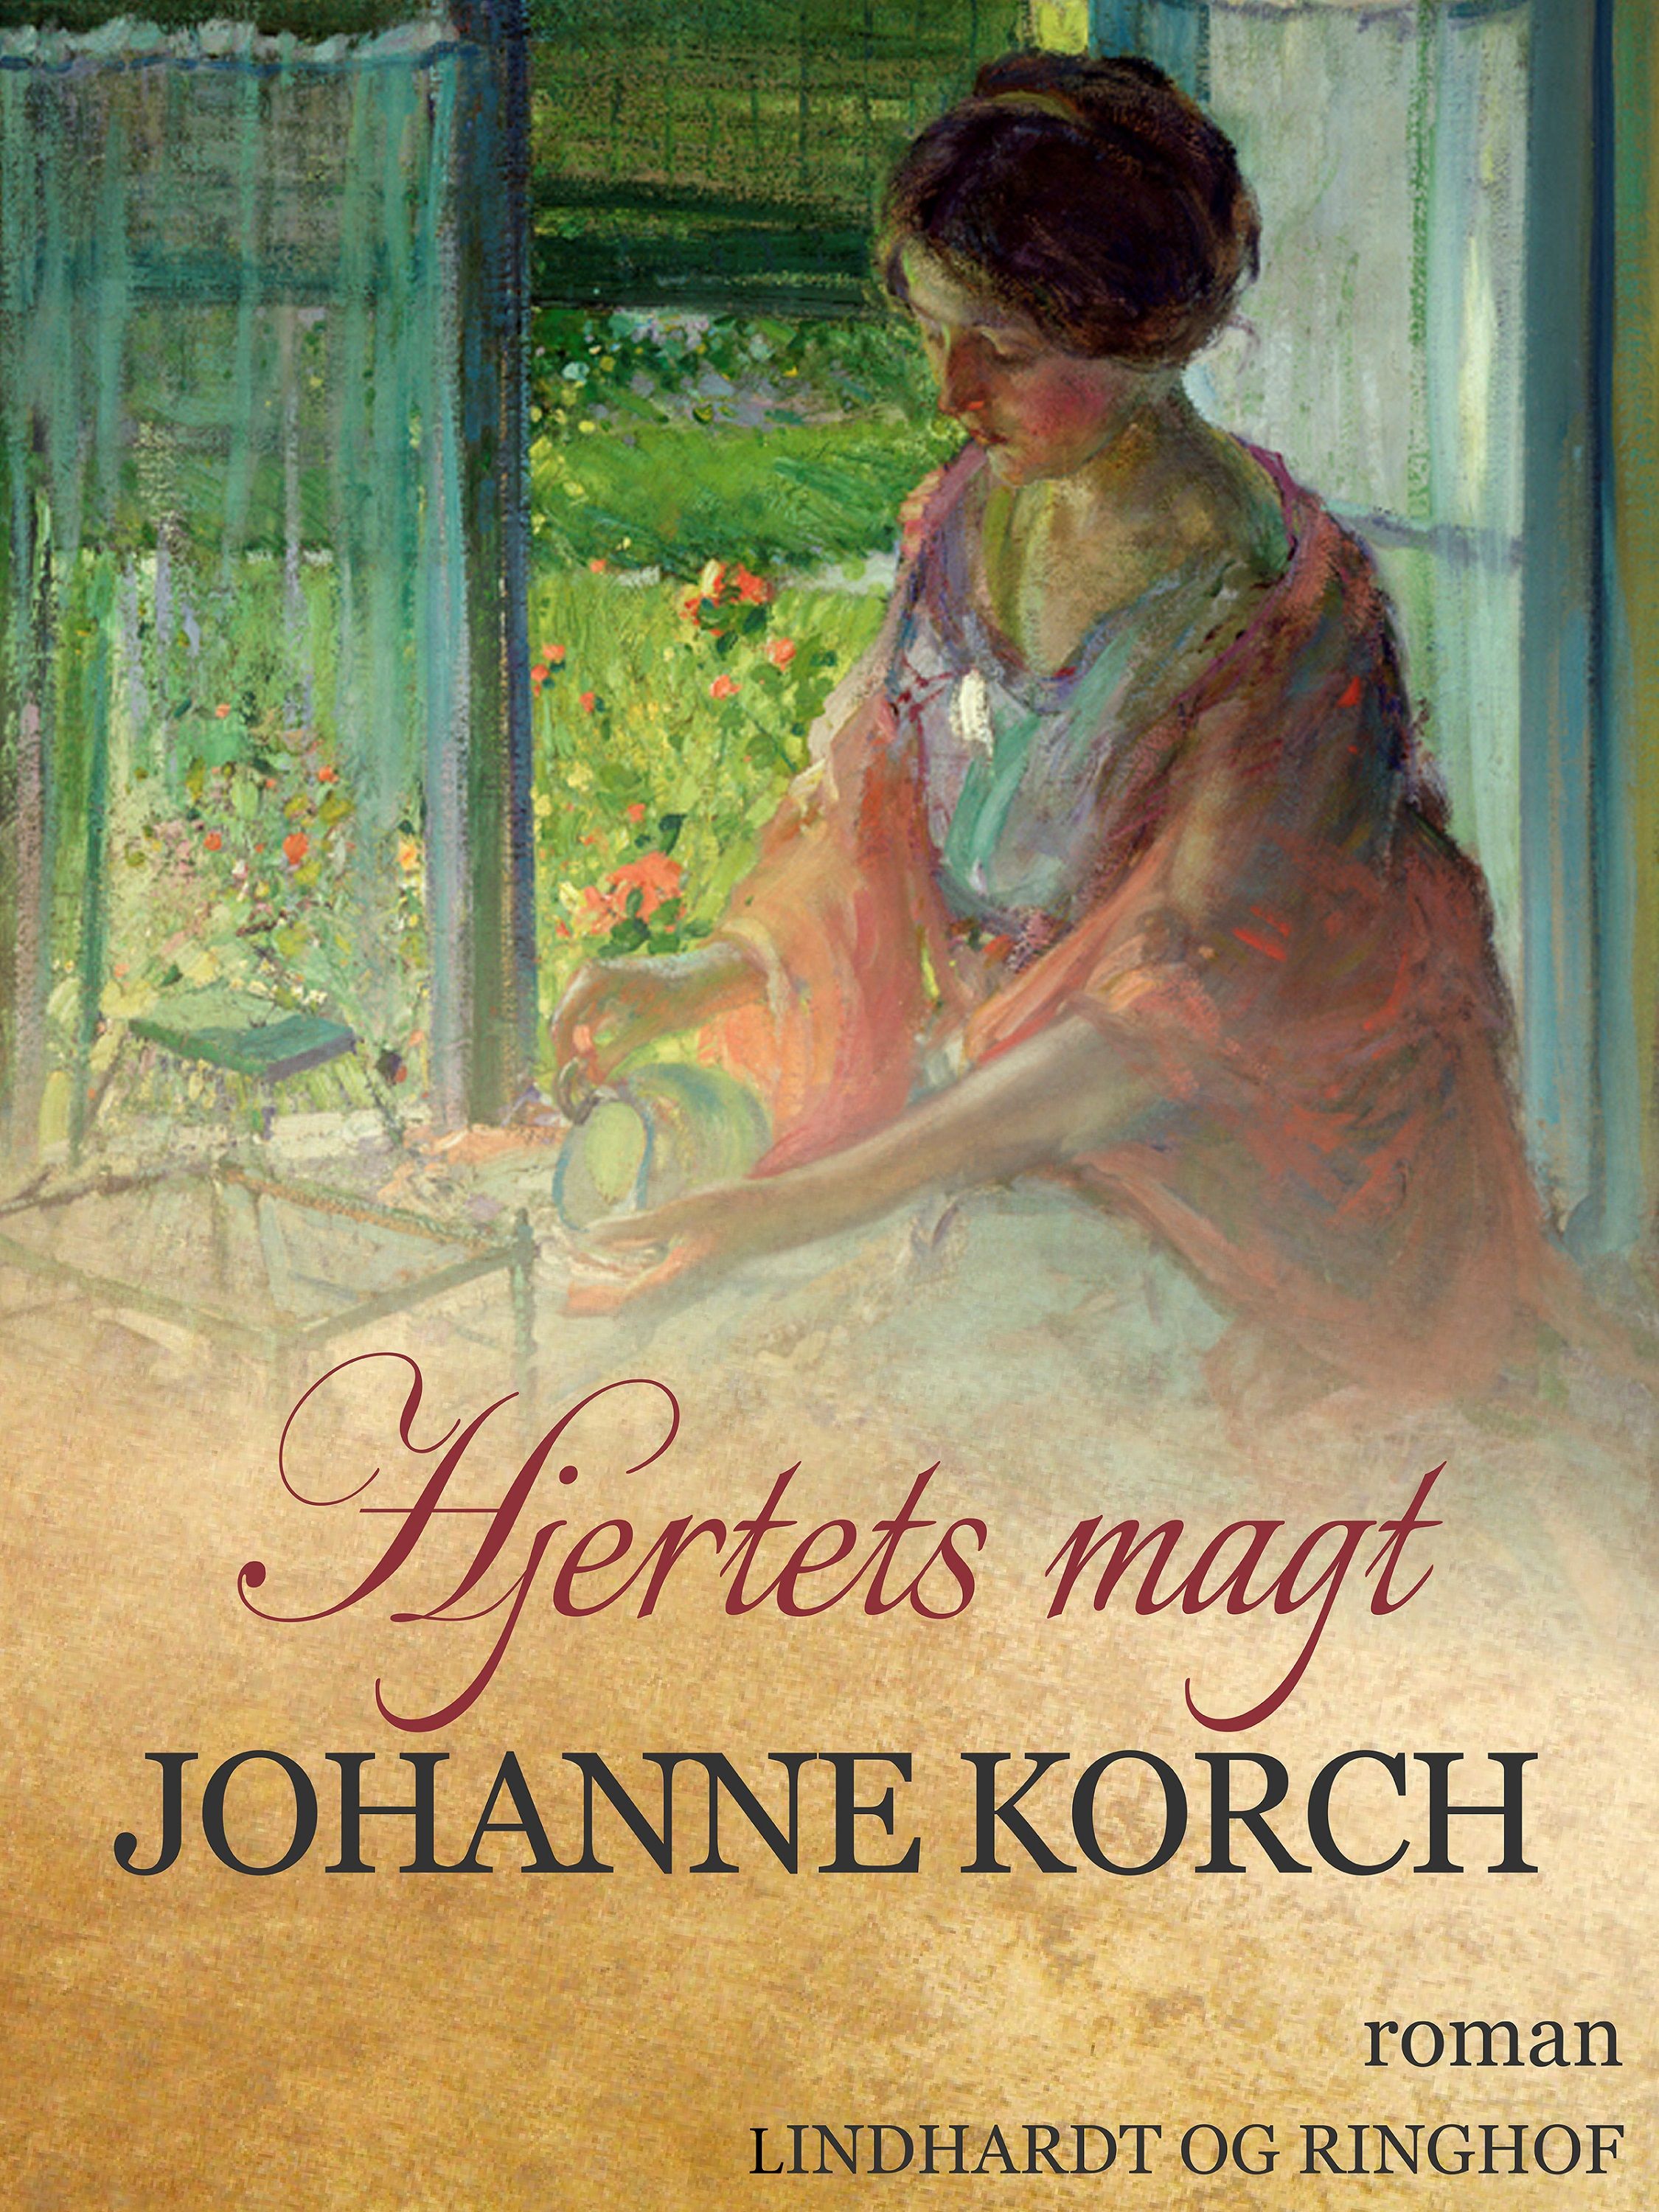 Hjertets magt, lydbog af Johanne Korch